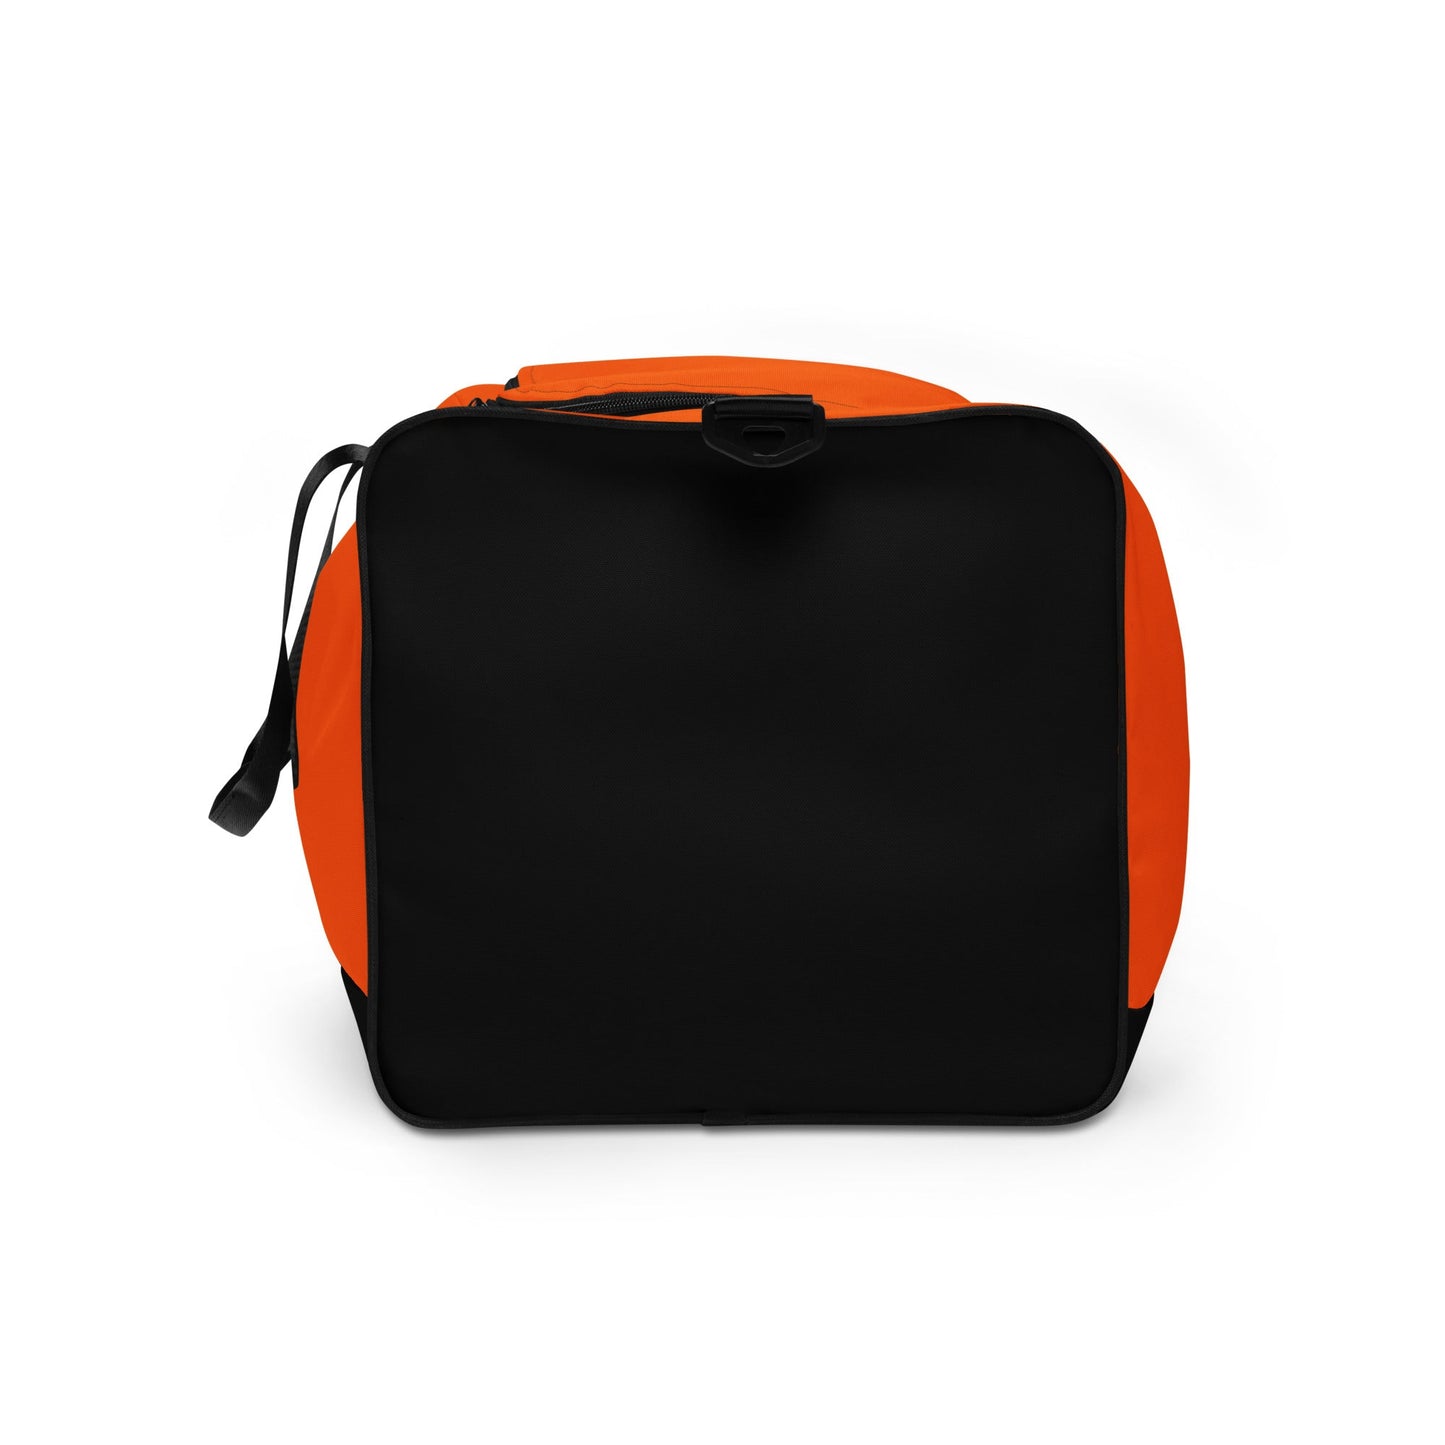 klasneakers KLA duffle bag - Electric Orange